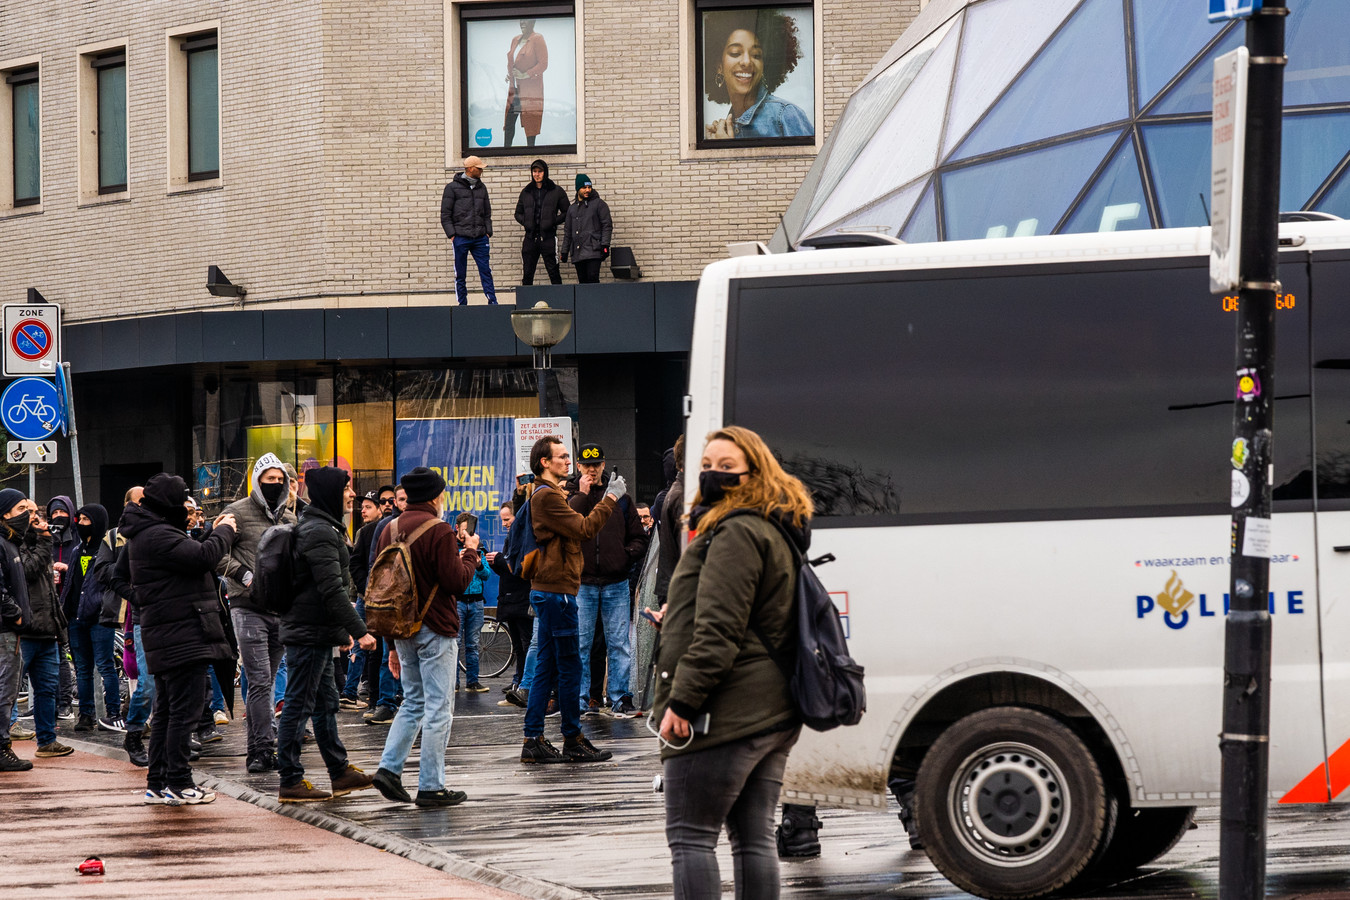 Chaos door zware rellen Eindhoven na anti lockdown demonstraties